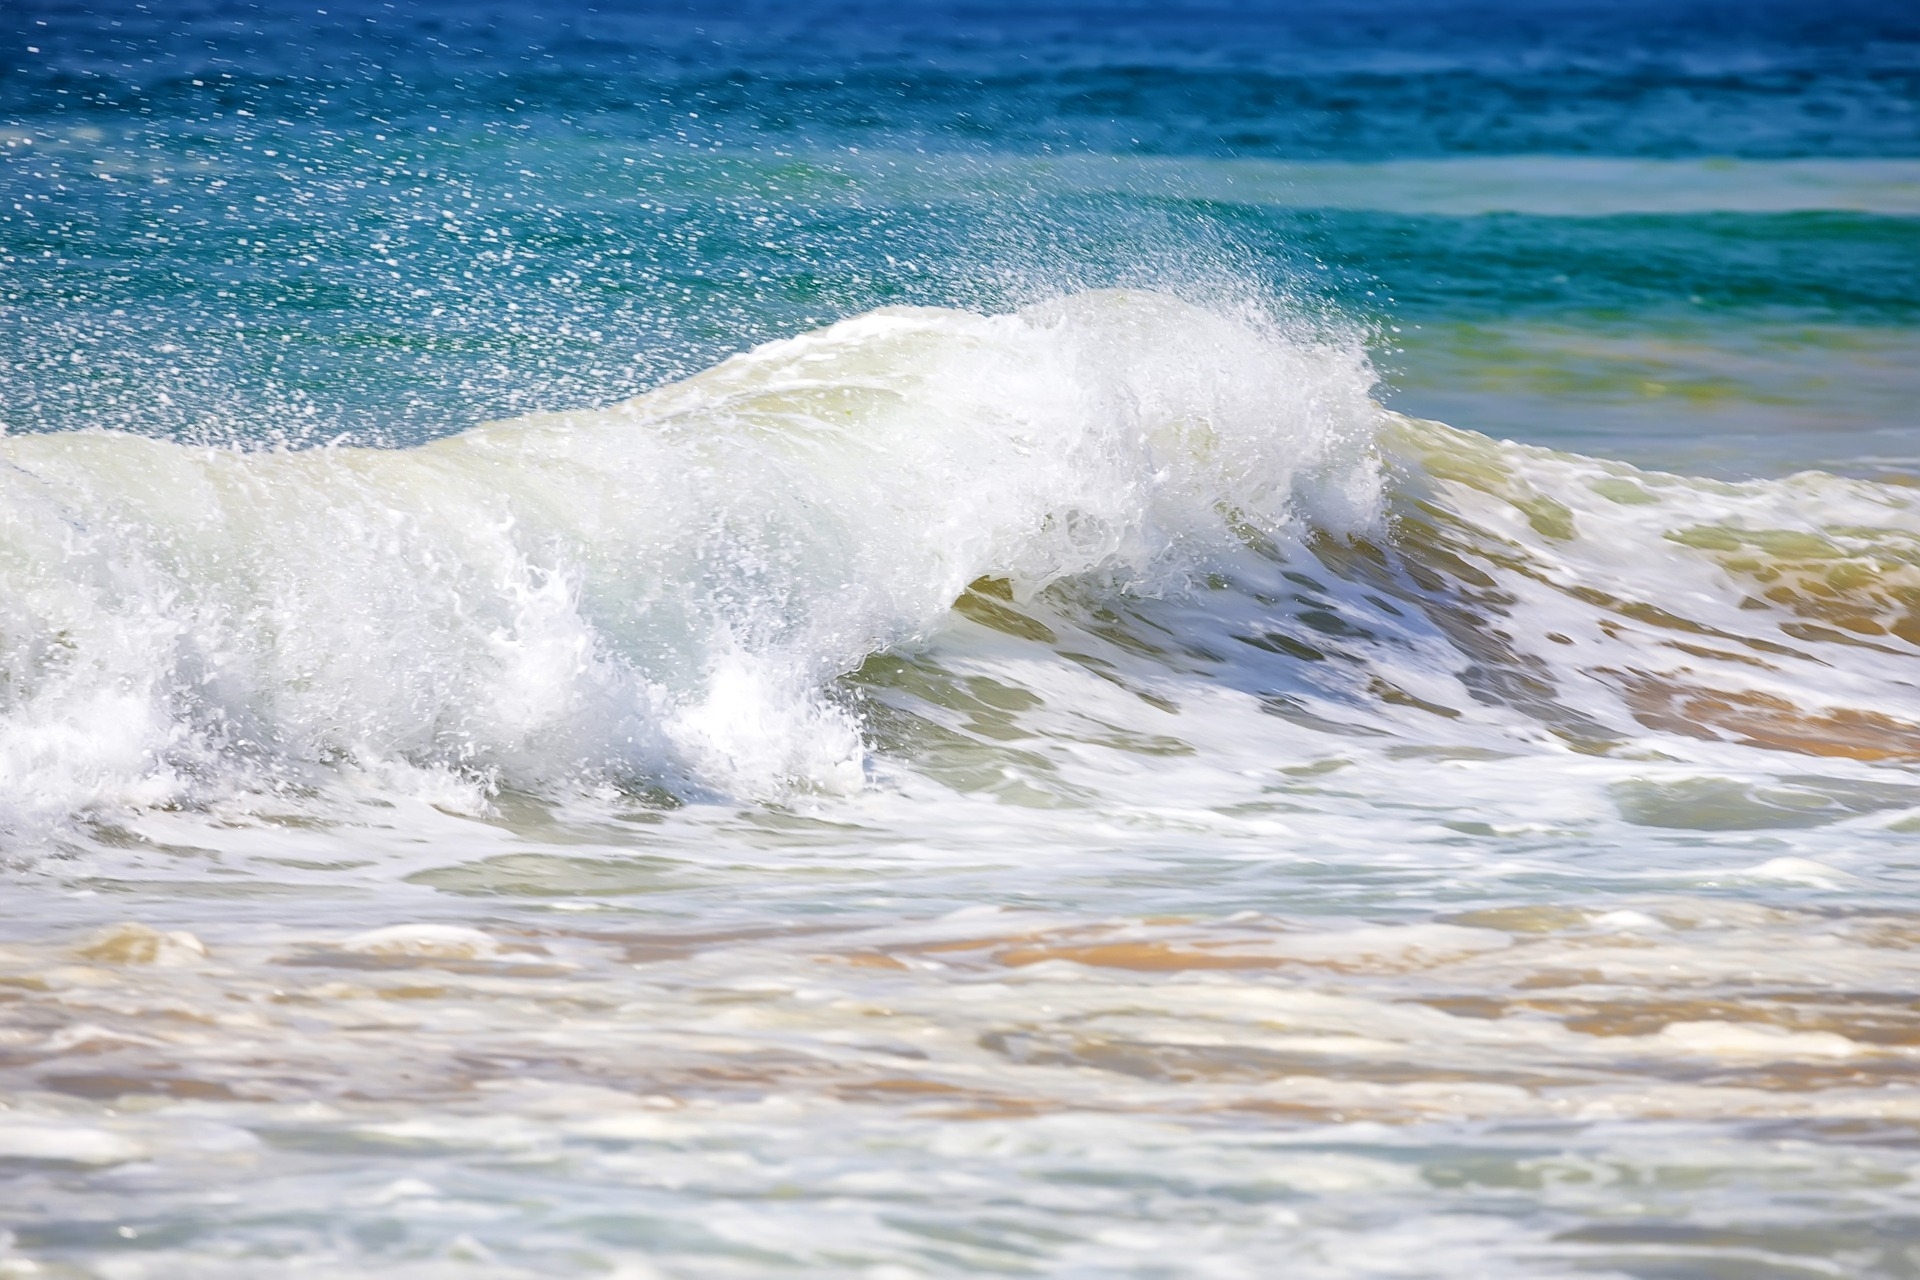 Blue Bond: τα κύματα που σκάνε στις παραλίες συμβολίζουν τη ζωντάνια της θάλασσας